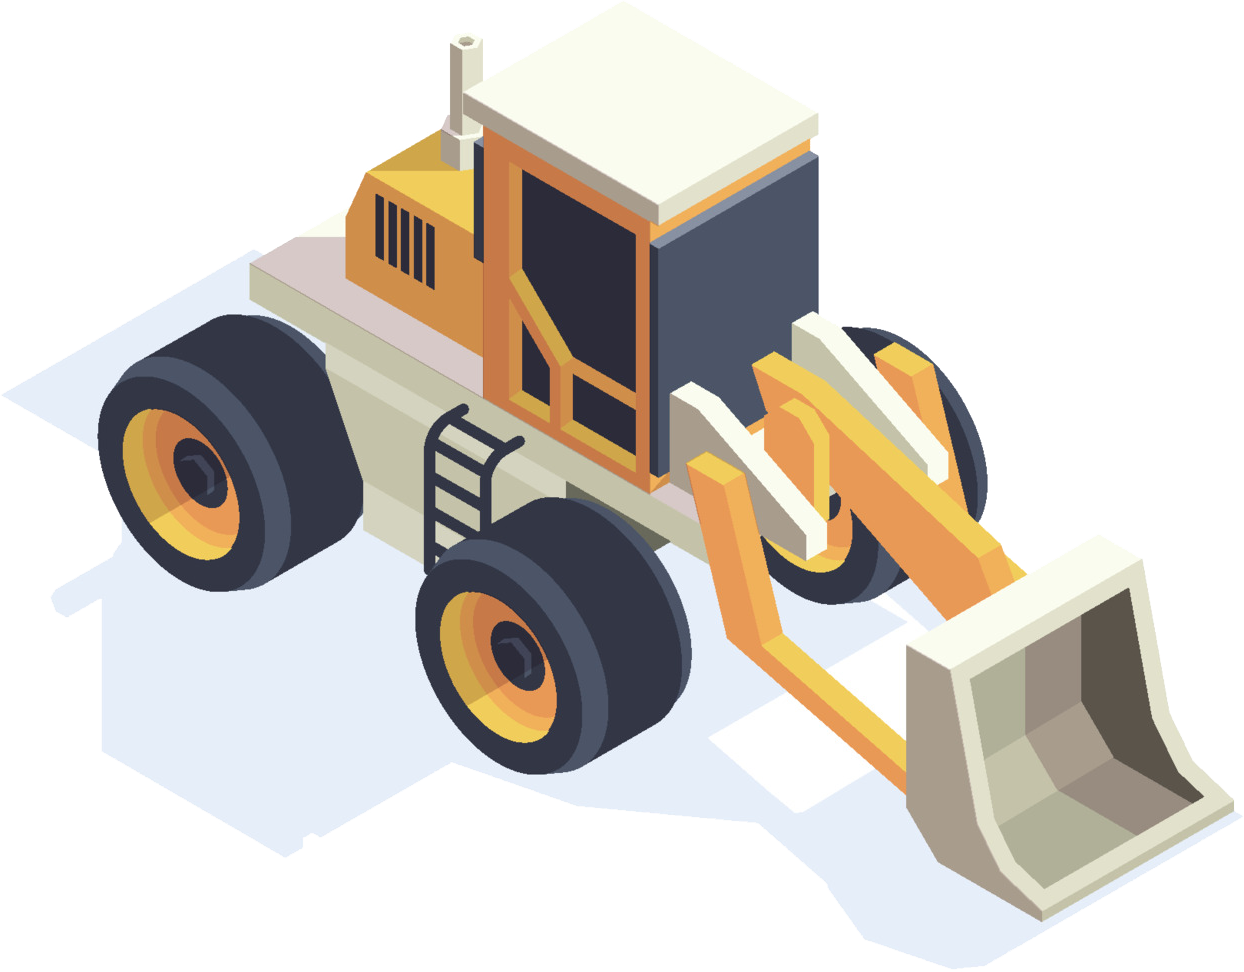 Agricultural equipment, tractors and motors